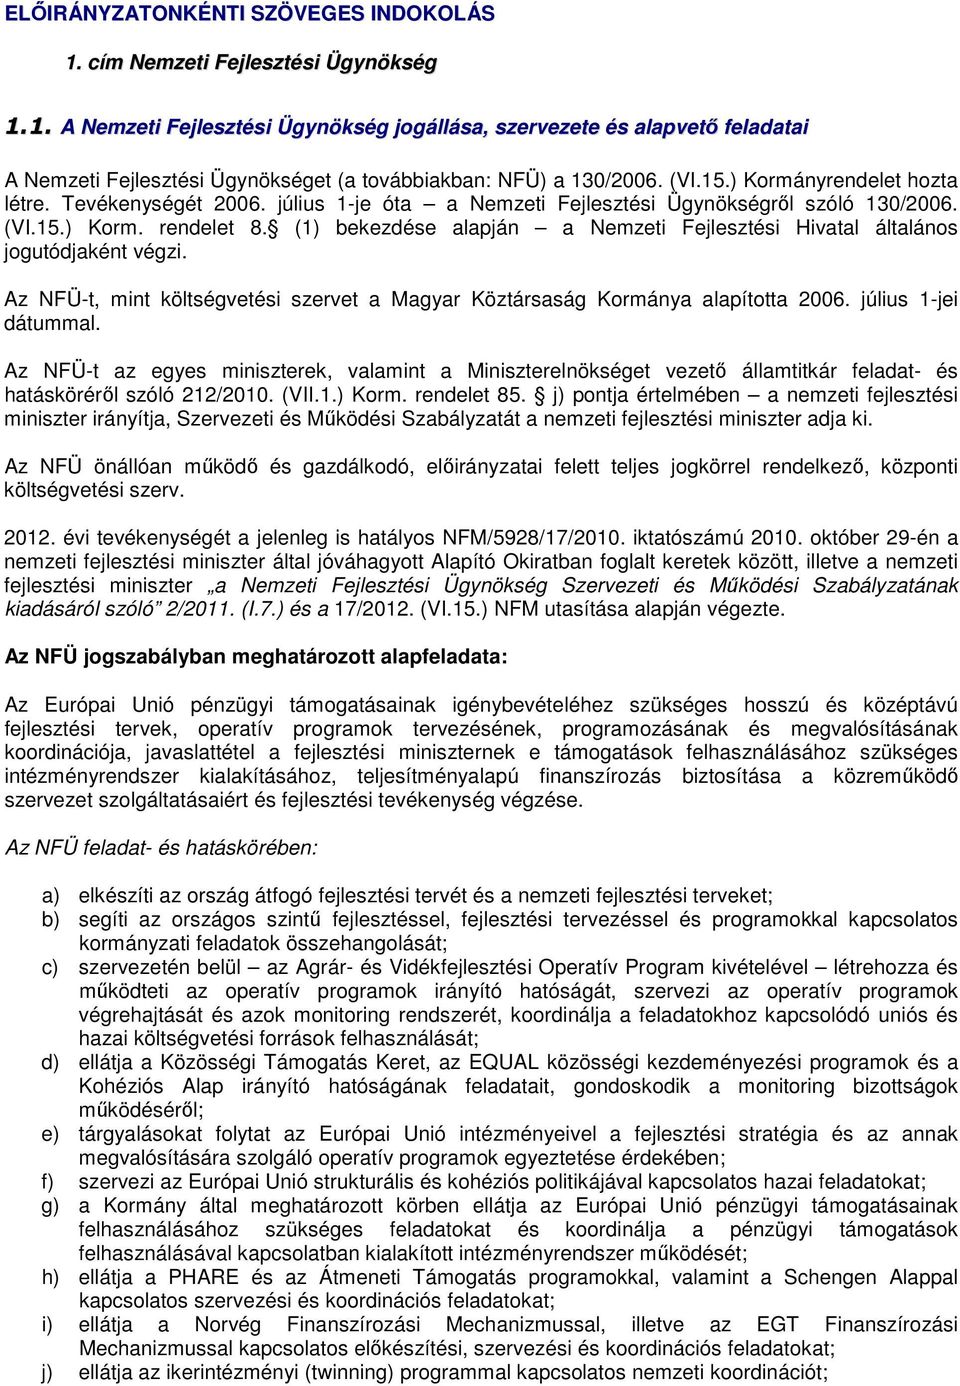 (1) bekezdése alapján a Nemzeti Fejlesztési Hivatal általános jogutódjaként végzi. Az NFÜ-t, mint költségvetési szervet a Magyar Köztársaság Kormánya alapította 2006. július 1-jei dátummal.